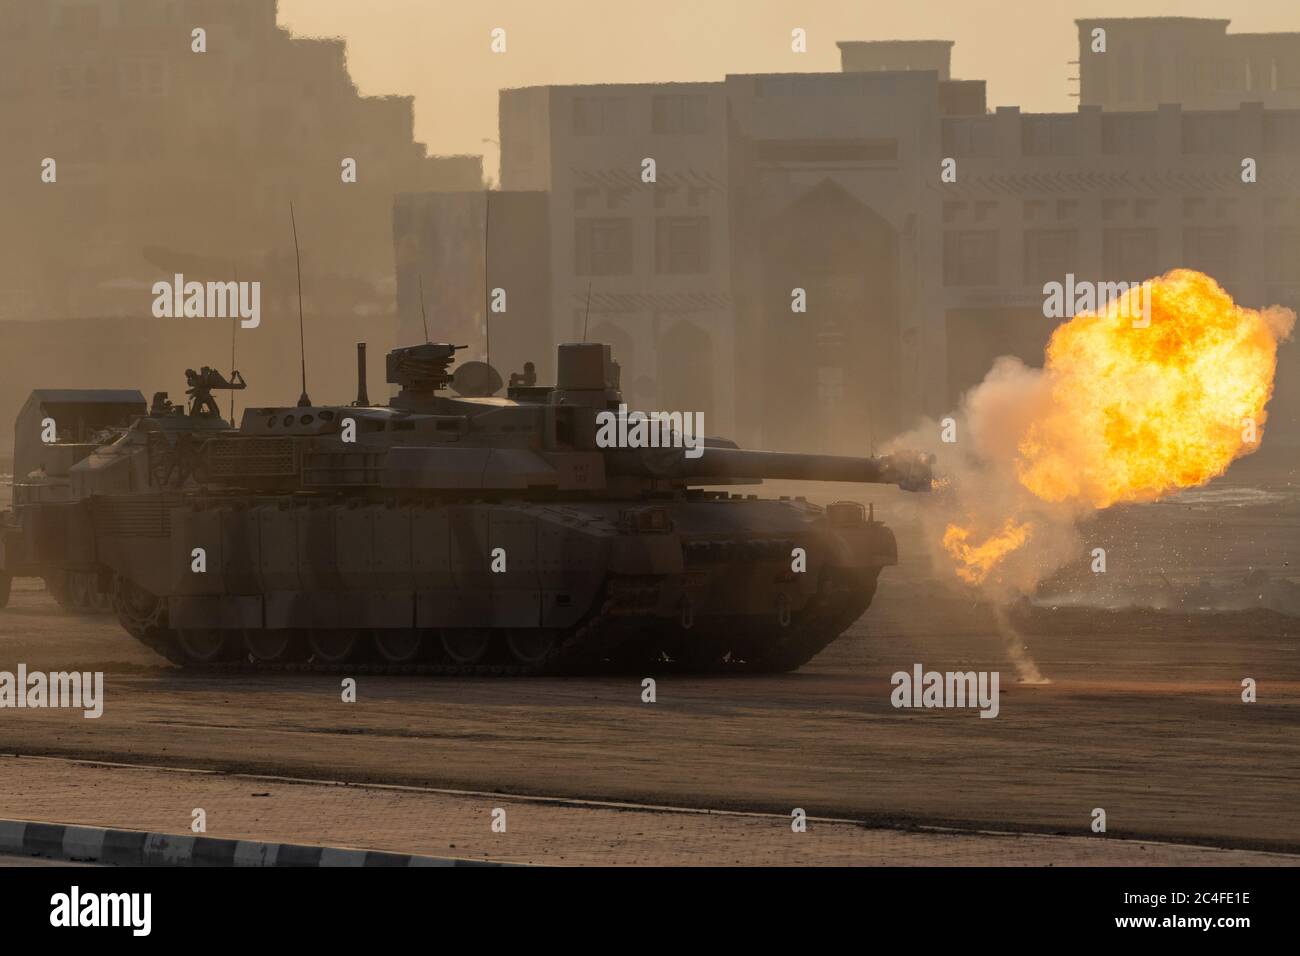 Esplosione militare, lotta, guerra e caos. Carri armati che attraversano il fumo e la distruzione. Concetto militare. Foto Stock